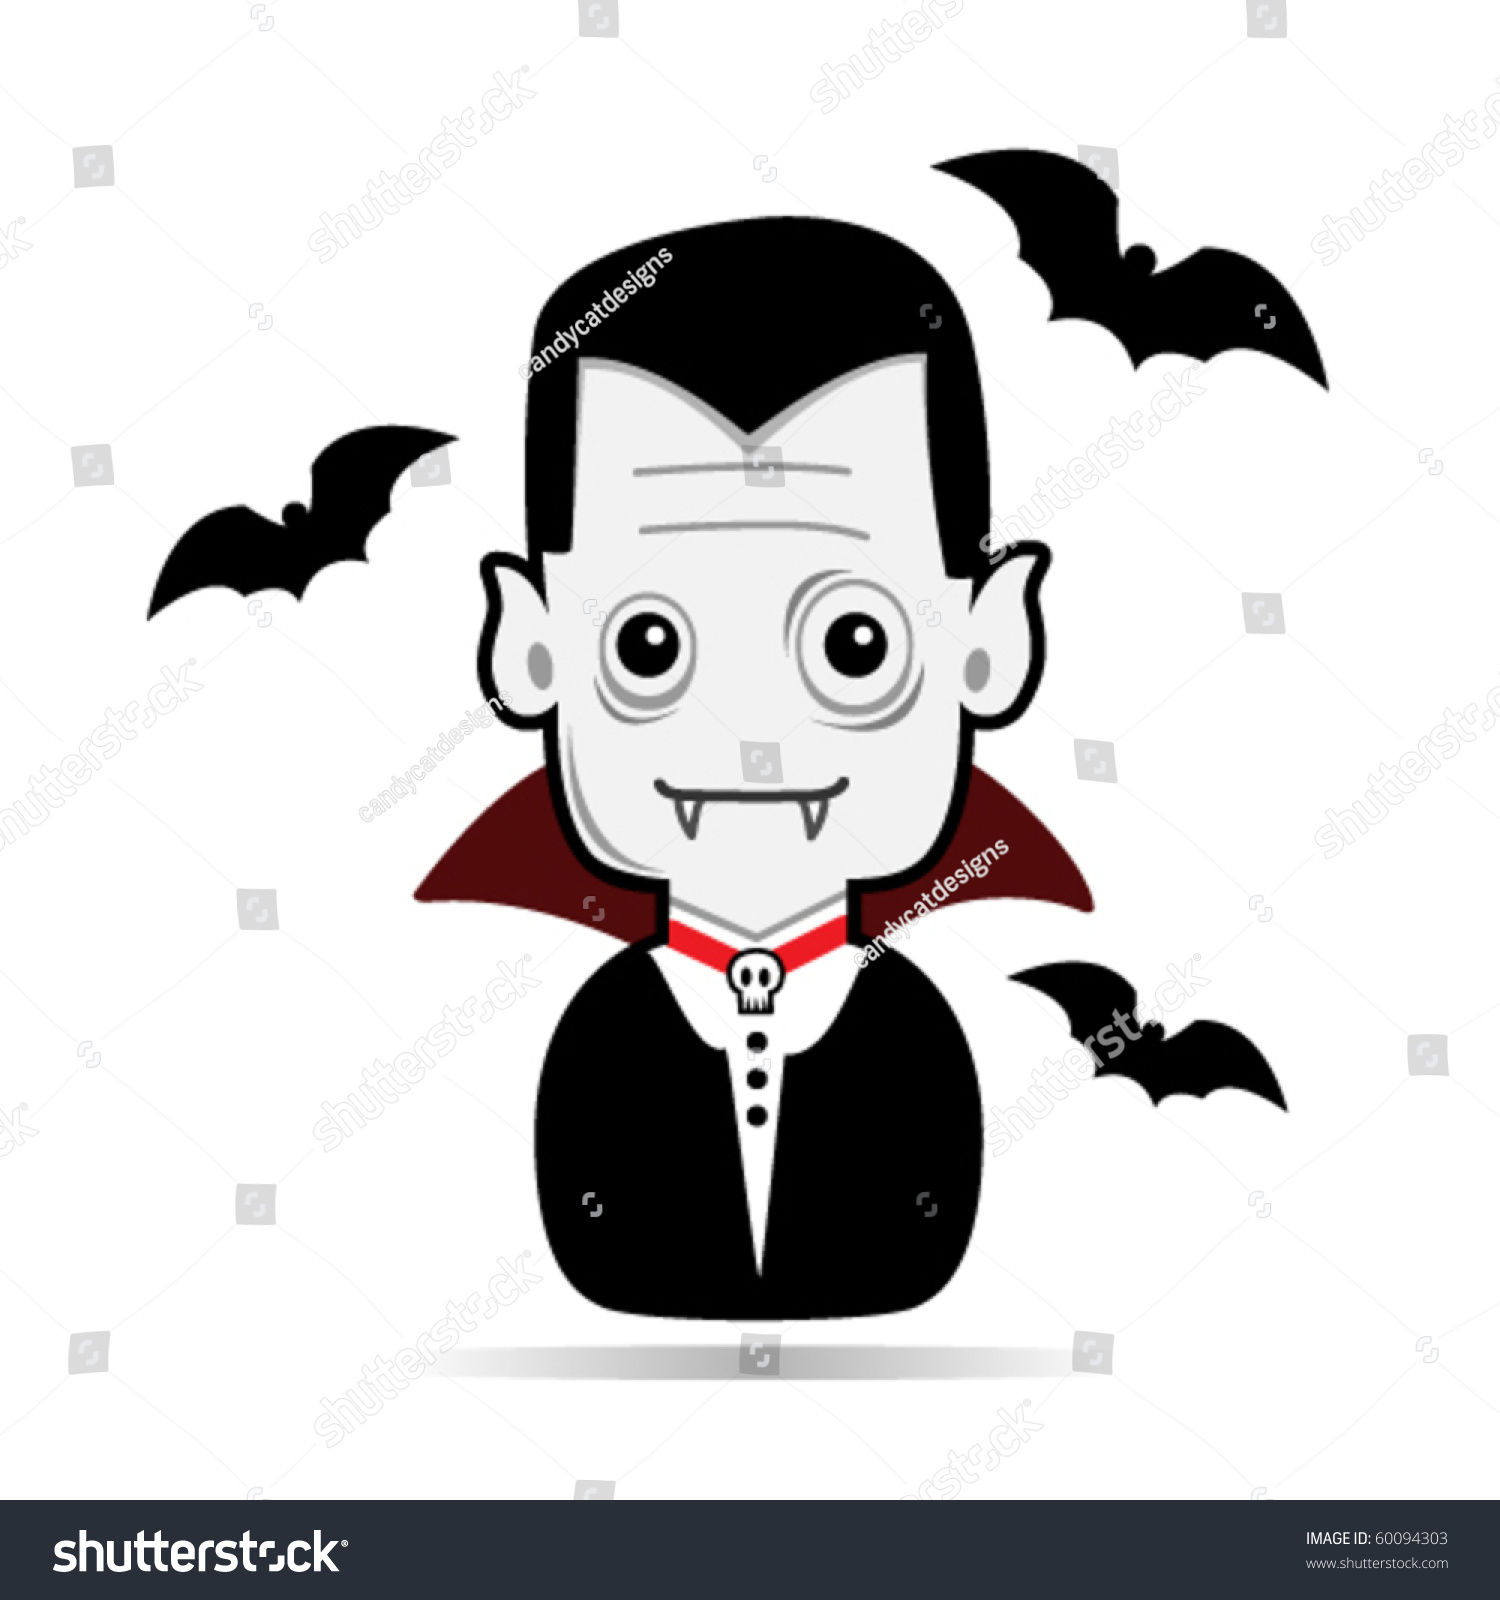 Vampire Dracula Illustration Stock Vector 60094303 - Shutterstock